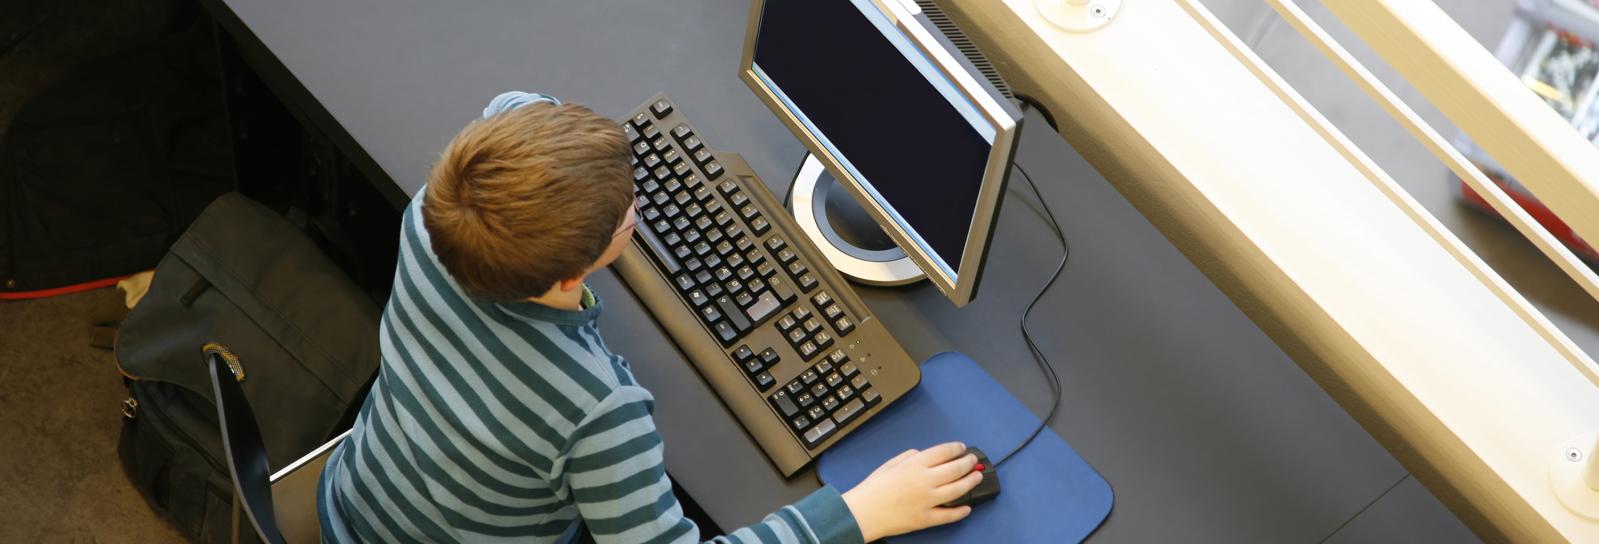 Dreng ved computer